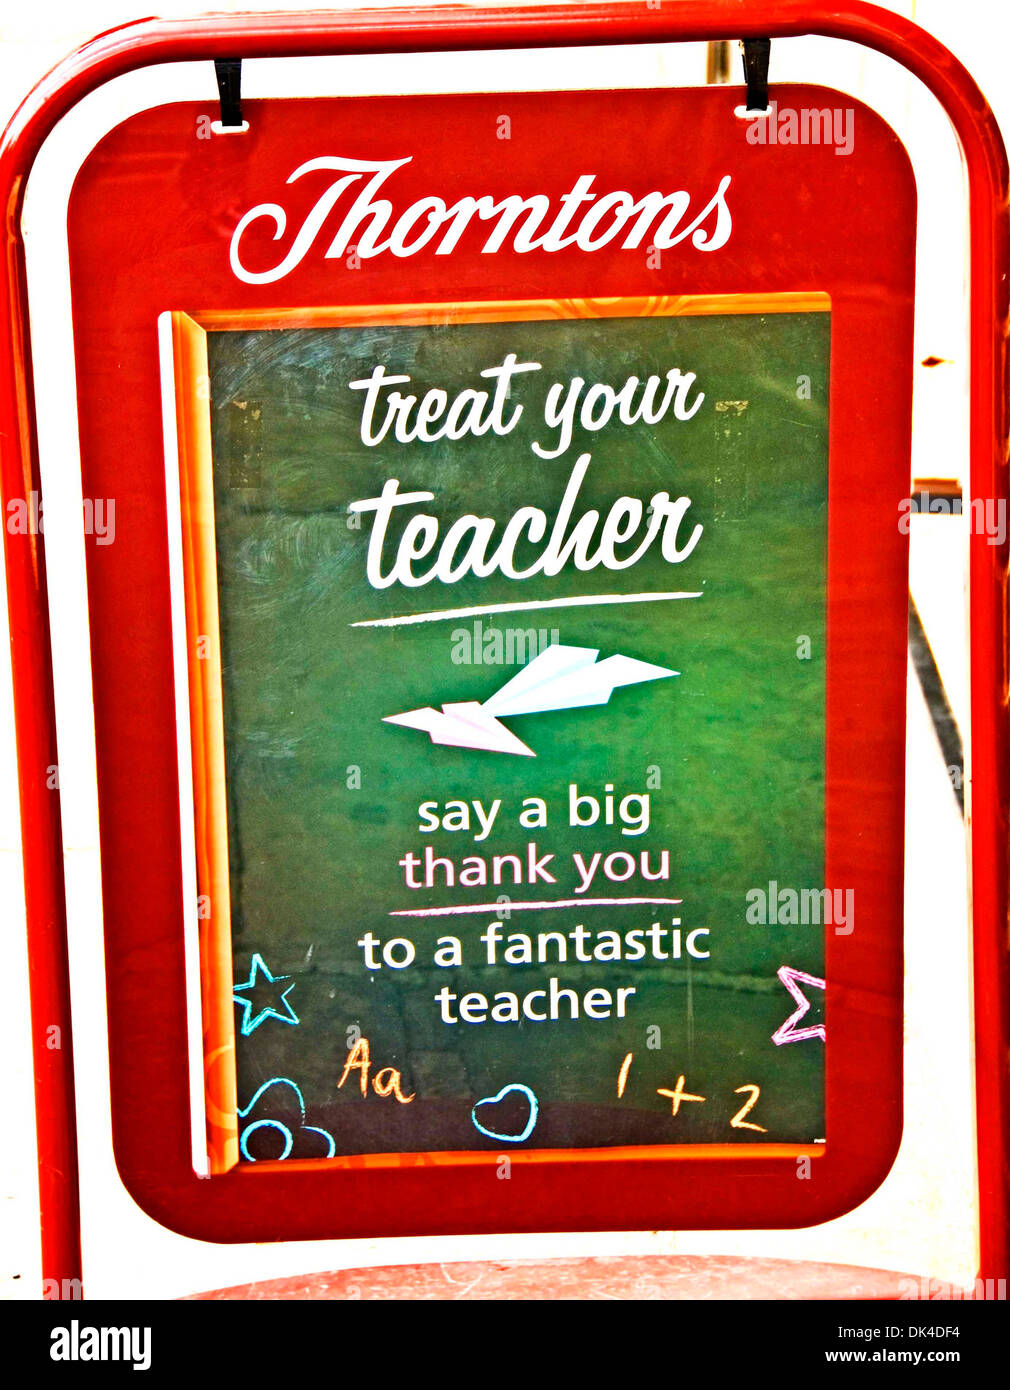 Anzeige von Thornton, eine Schokoladen-Firma für Süßigkeiten für einen fantastischen Lehrer Stockfoto